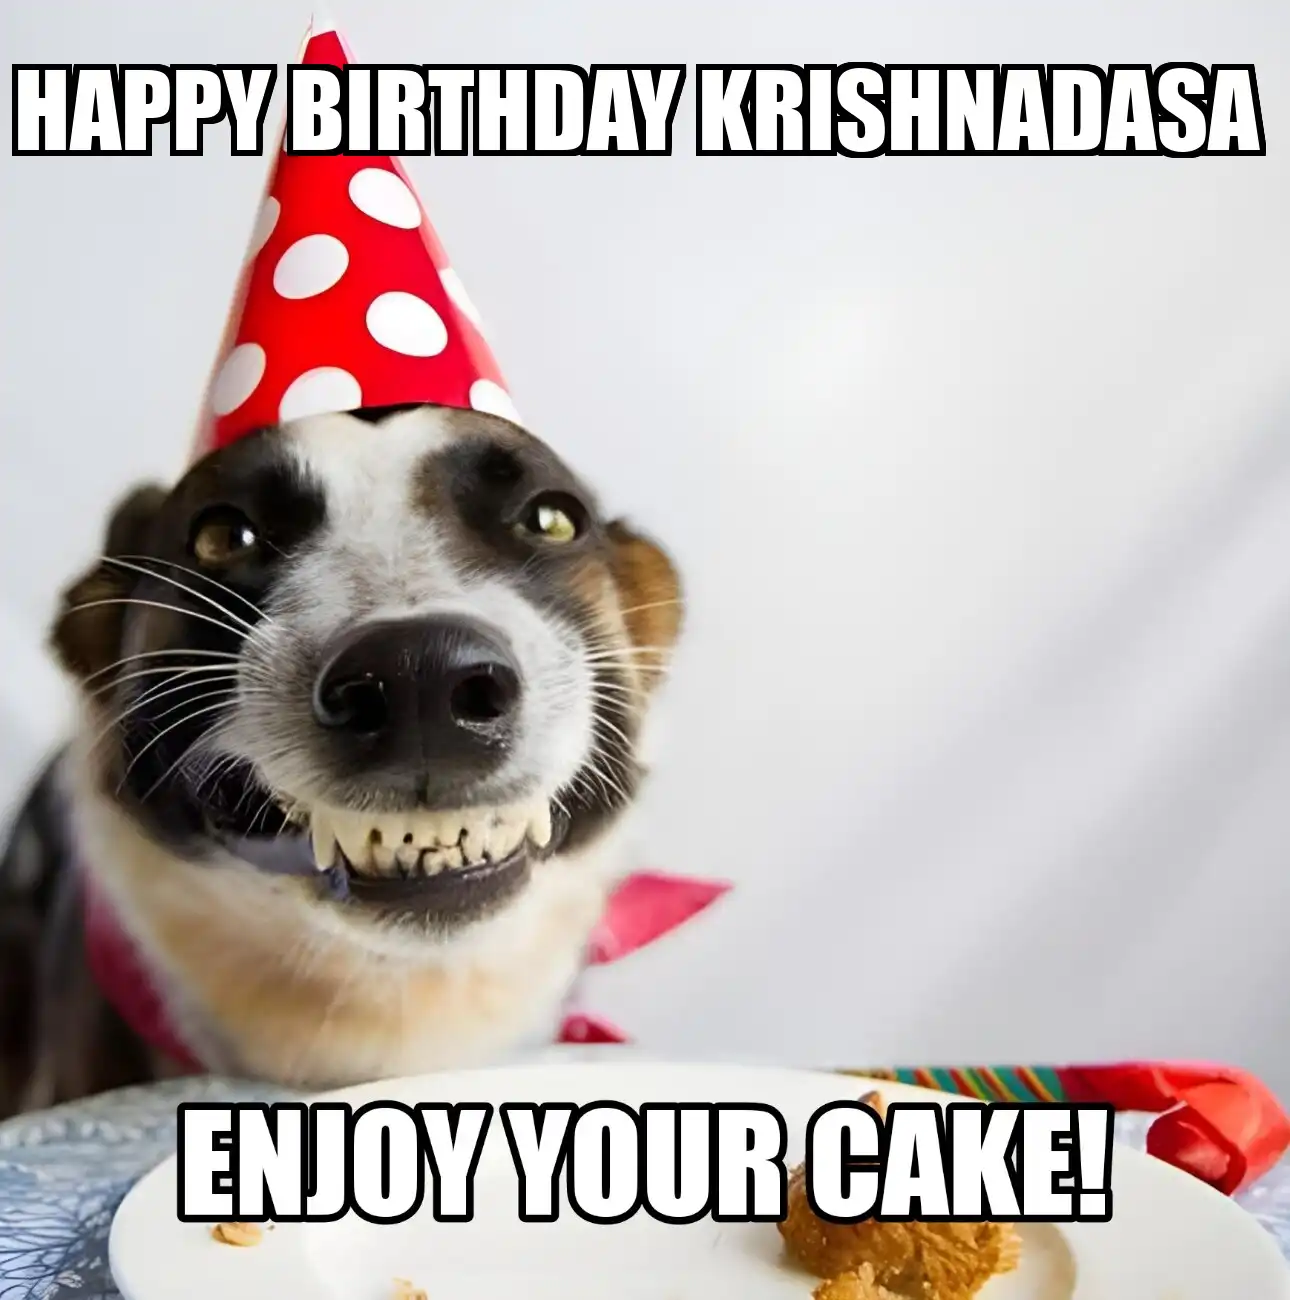 Happy Birthday Krishnadasa Enjoy Your Cake Dog Meme